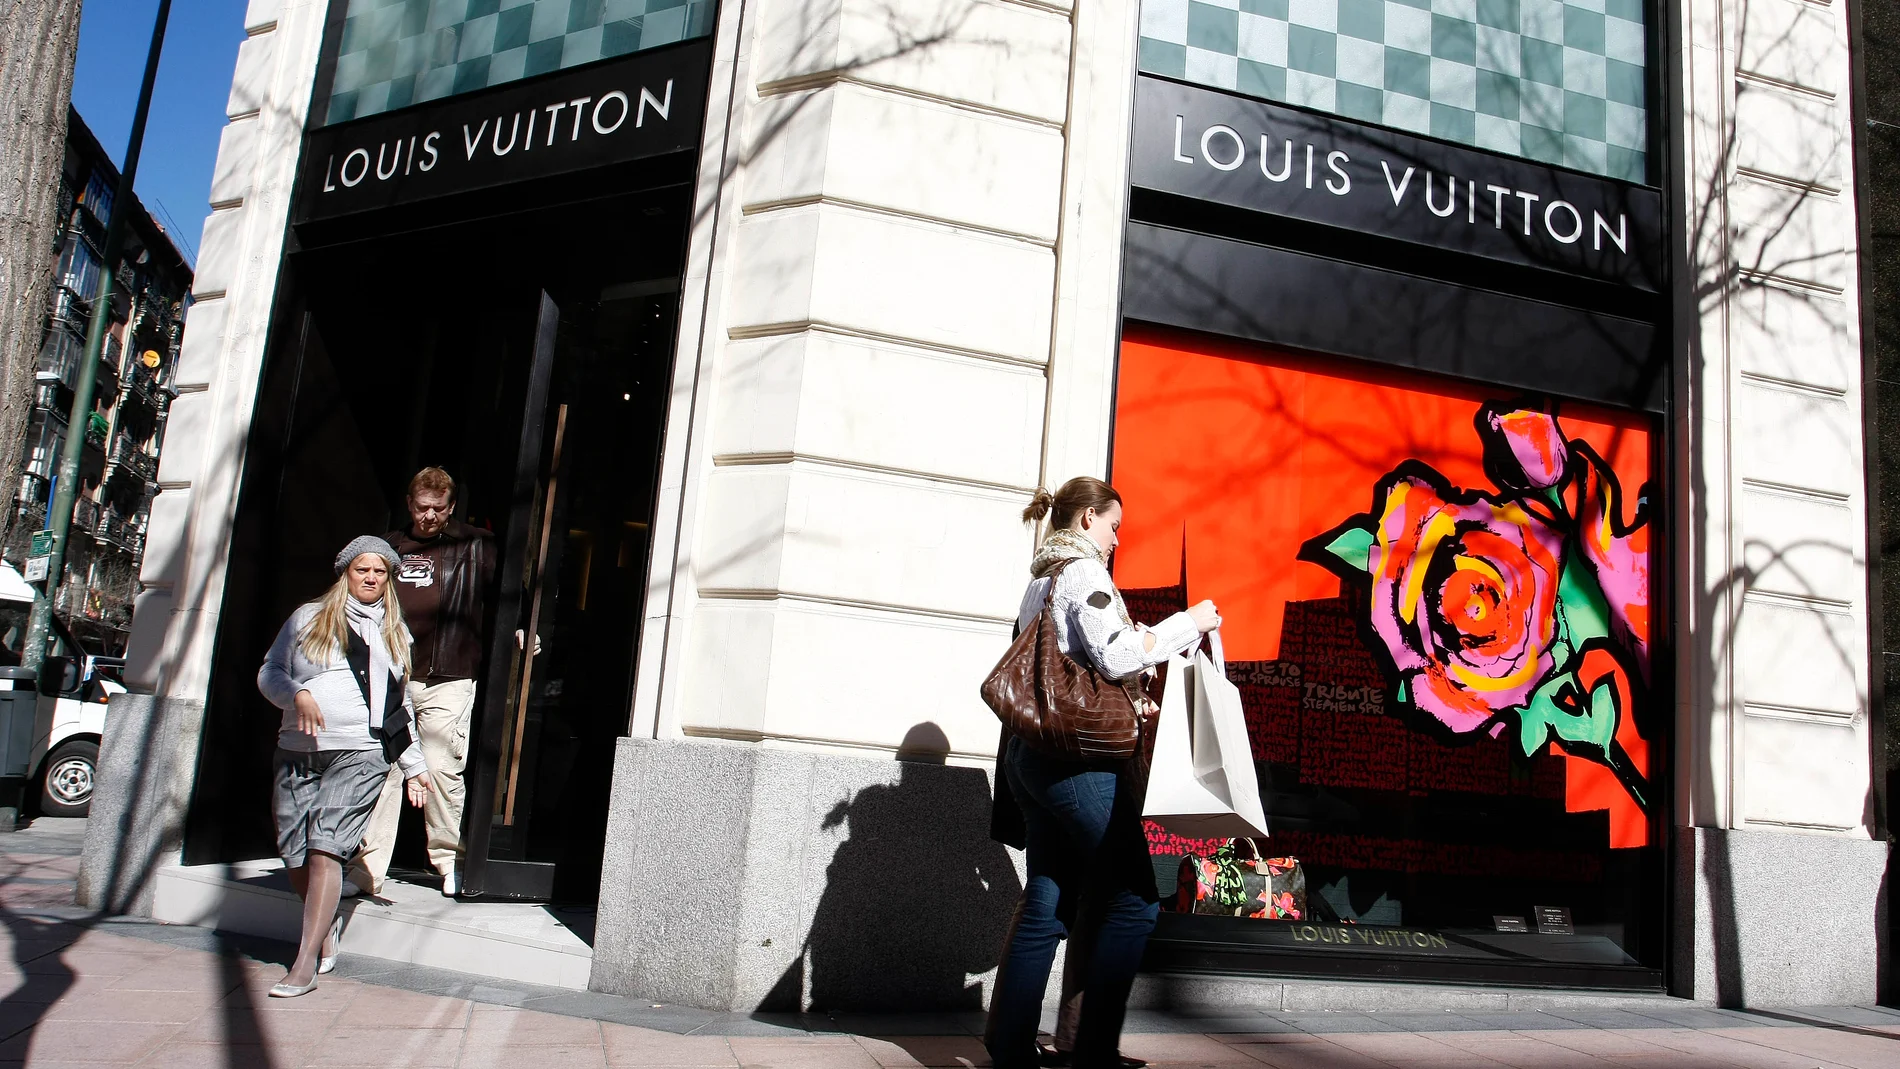 Tienda de Louis Voitton, uno de las marcas emblemáticas del lujo, en el centro de Madrid